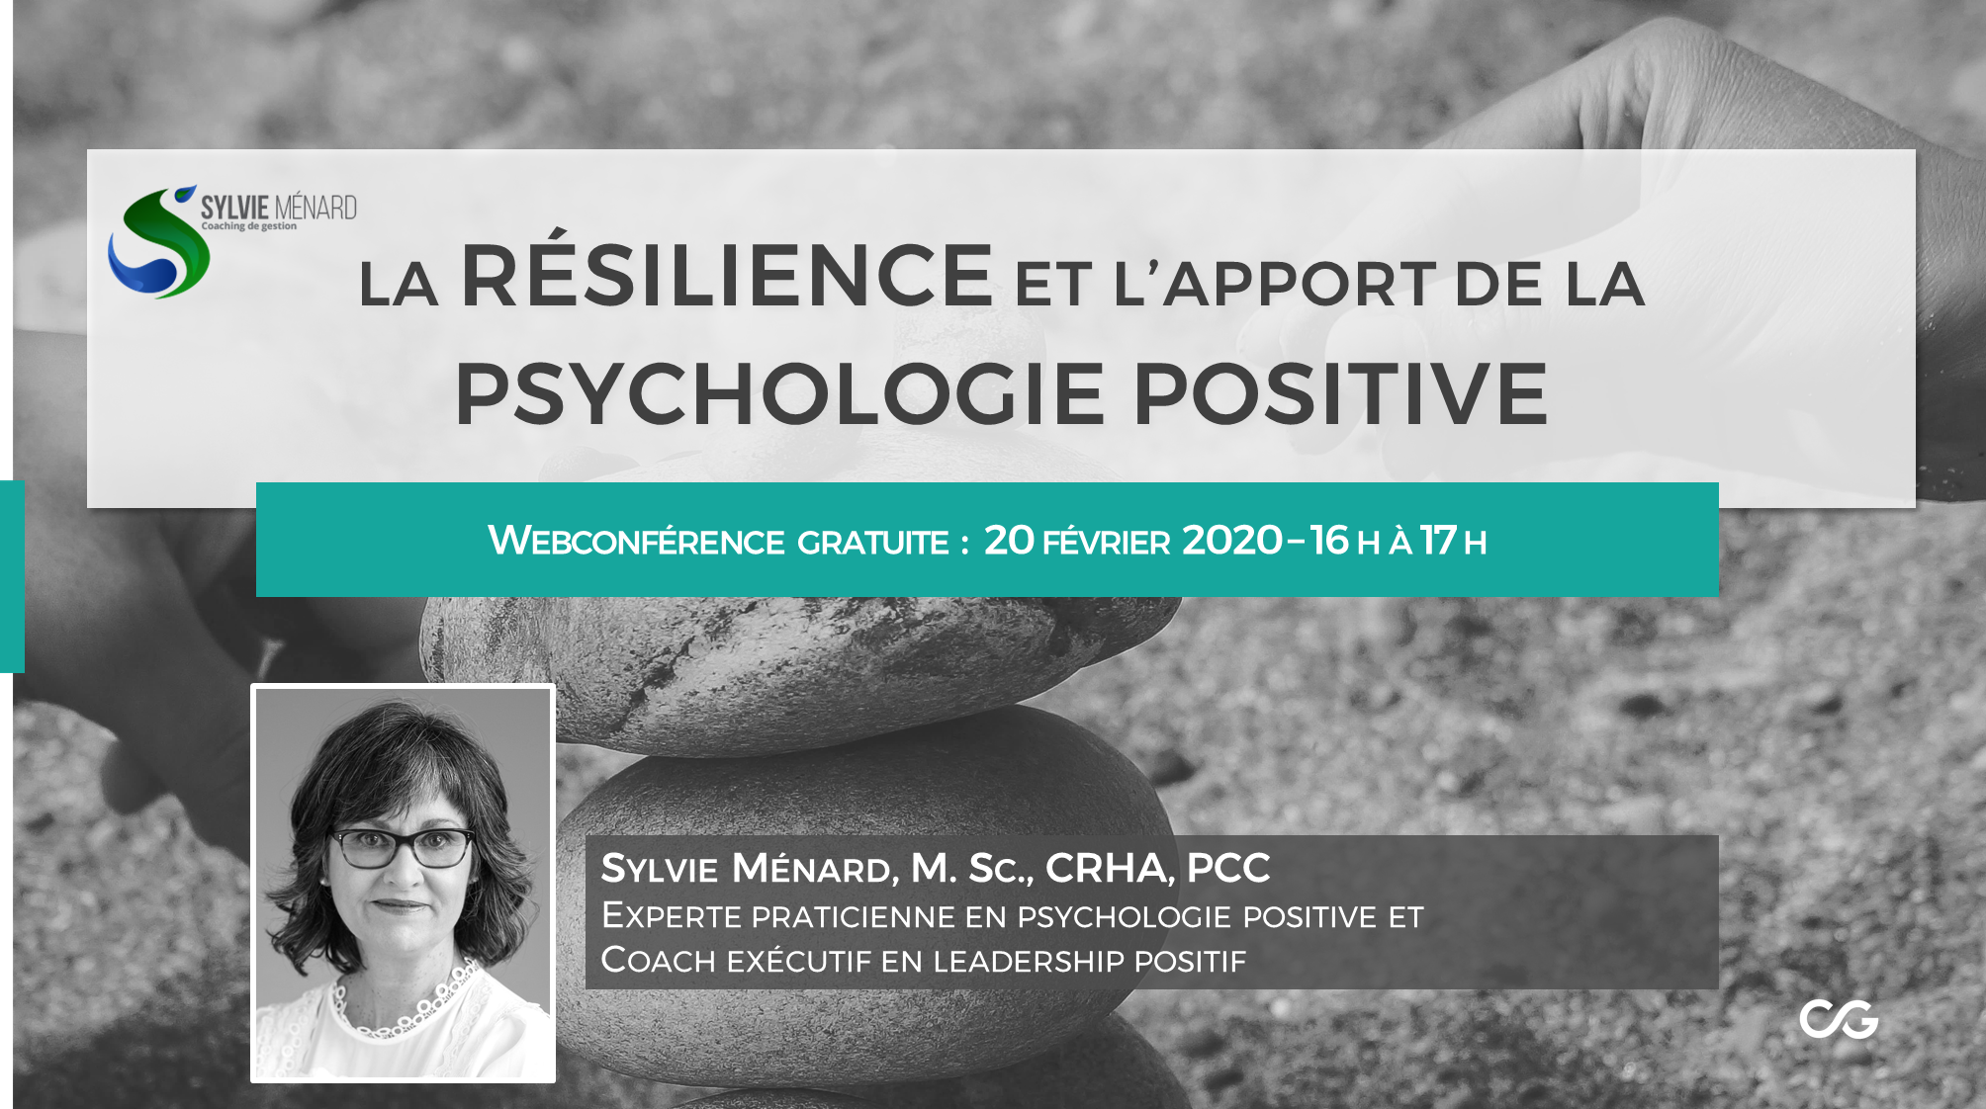 La résilience et l'apport de la psychologie positive